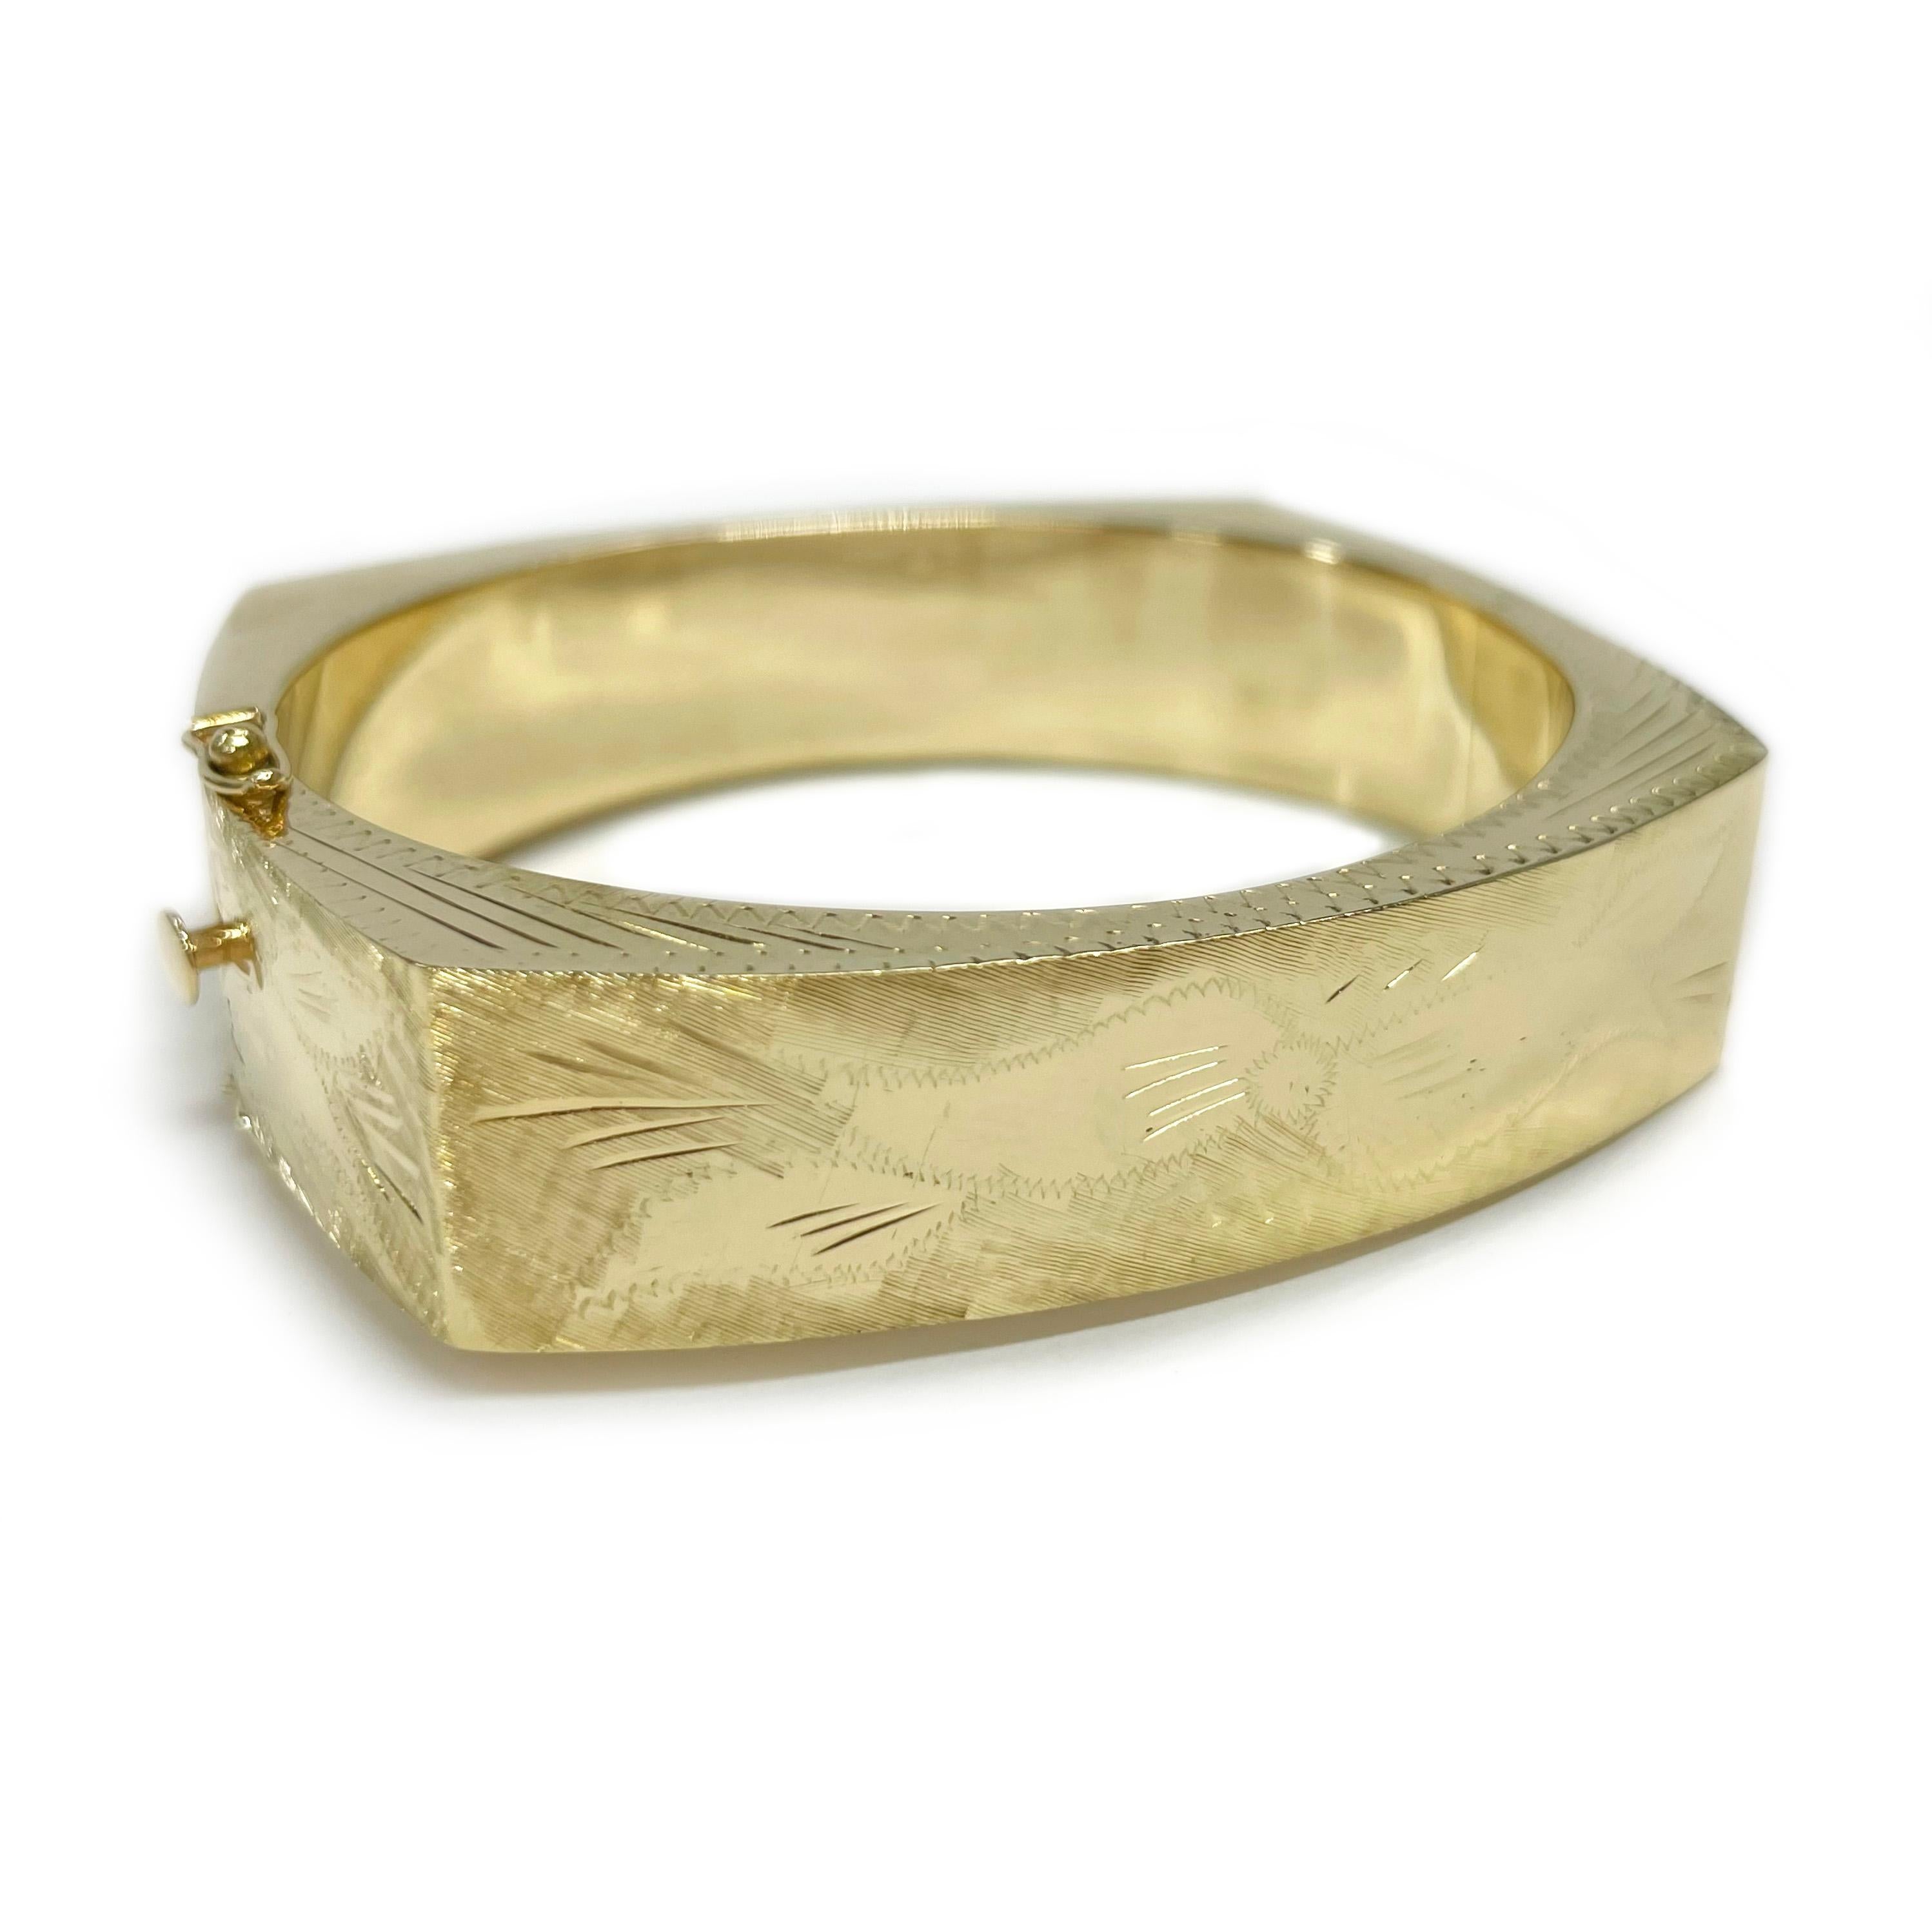 Bracelet en or jaune 14 carats gravé de diamants. Le bracelet creux présente des accents taillés dans le diamant avec un nœud, une feuille et des motifs en zigzag gravés à la main. L'intérieur du bracelet présente une finition lisse et brillante,